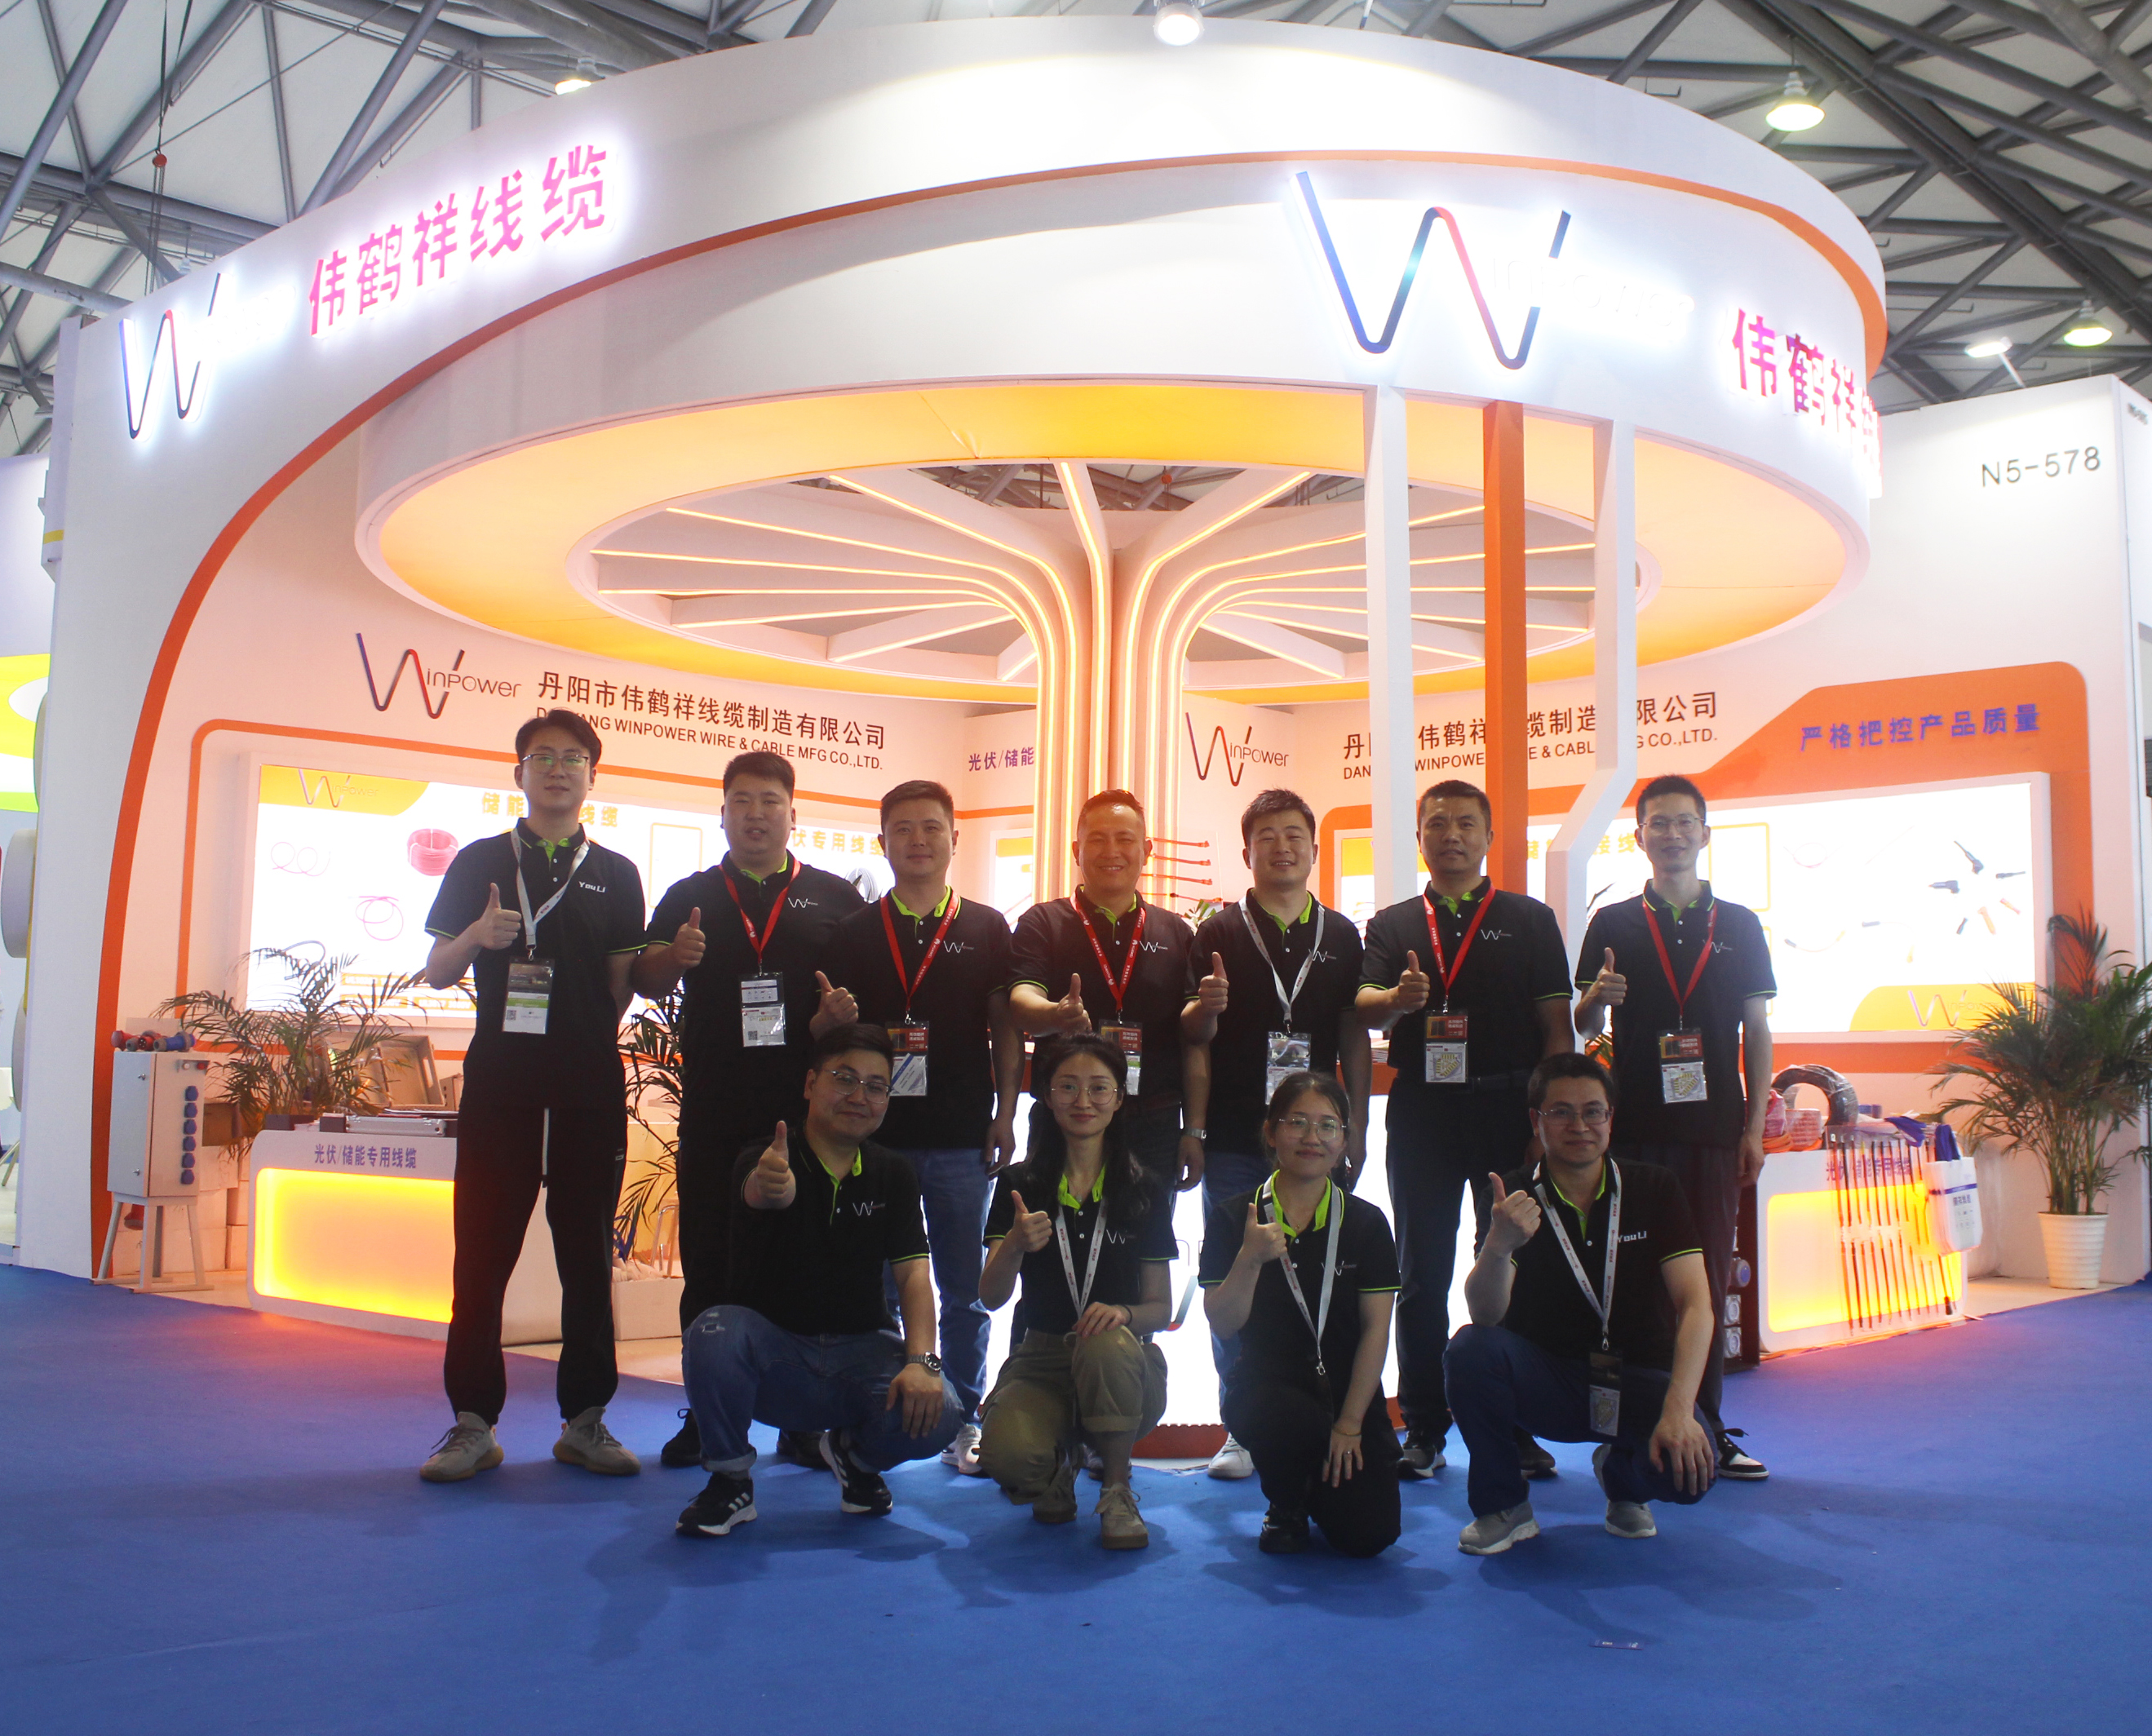 Kohët e fundit, Konferenca dhe Ekspozita e 16-të Ndërkombëtare Fotovoltaike Diellore dhe Energjisë së Zgjuar të SNEC (Shanghai) përfundoi në Shangai.